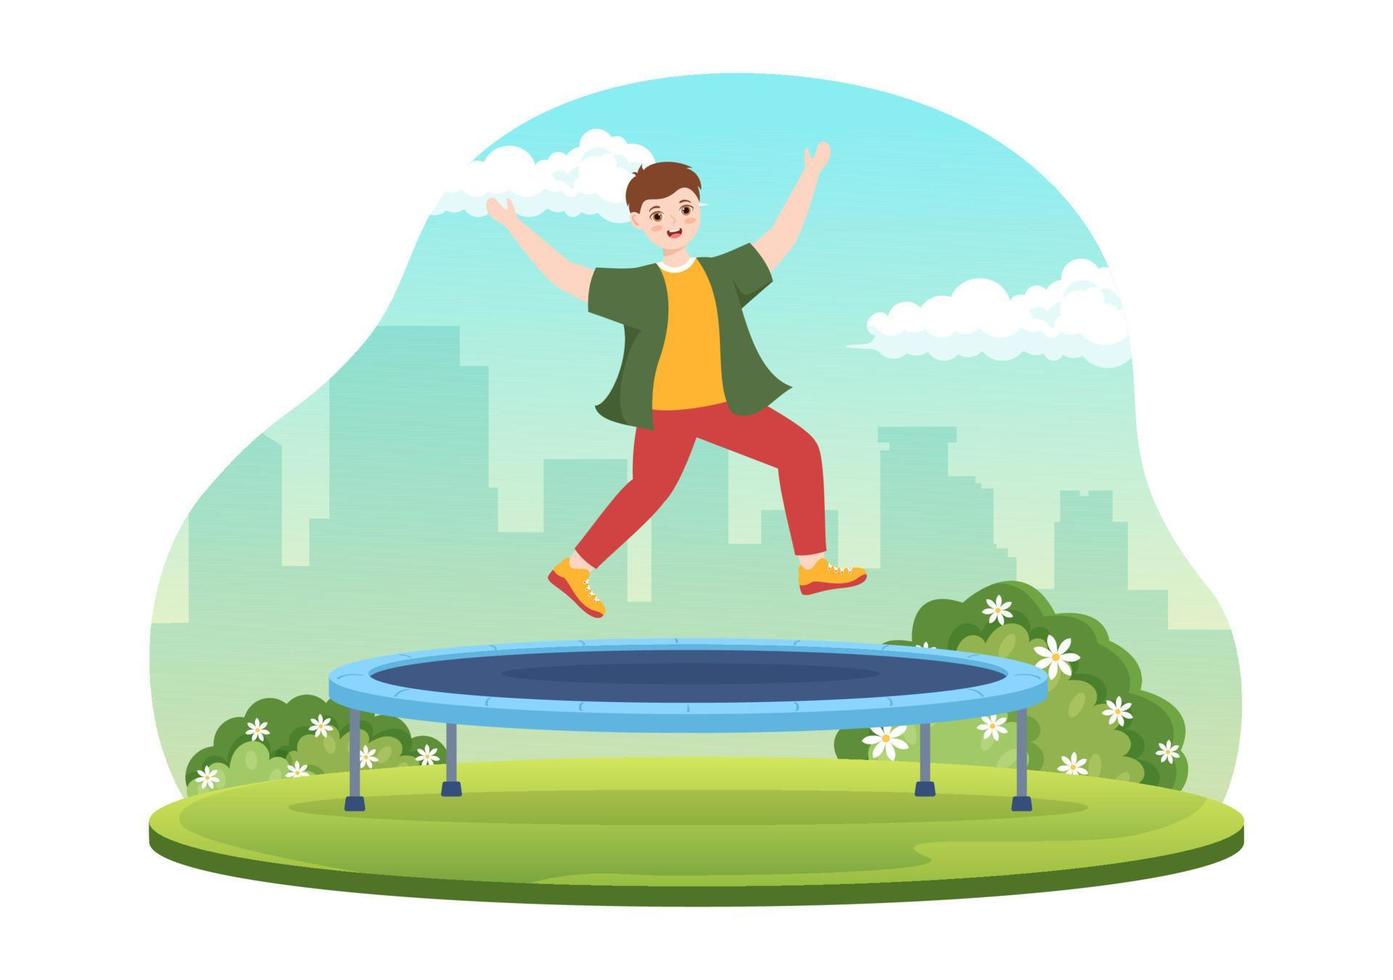 illustration de trampoline avec des jeunes sautant sur un trampolines dans le modèle de fond d'activité de plein air d'été dessin animé plat dessiné à la main vecteur